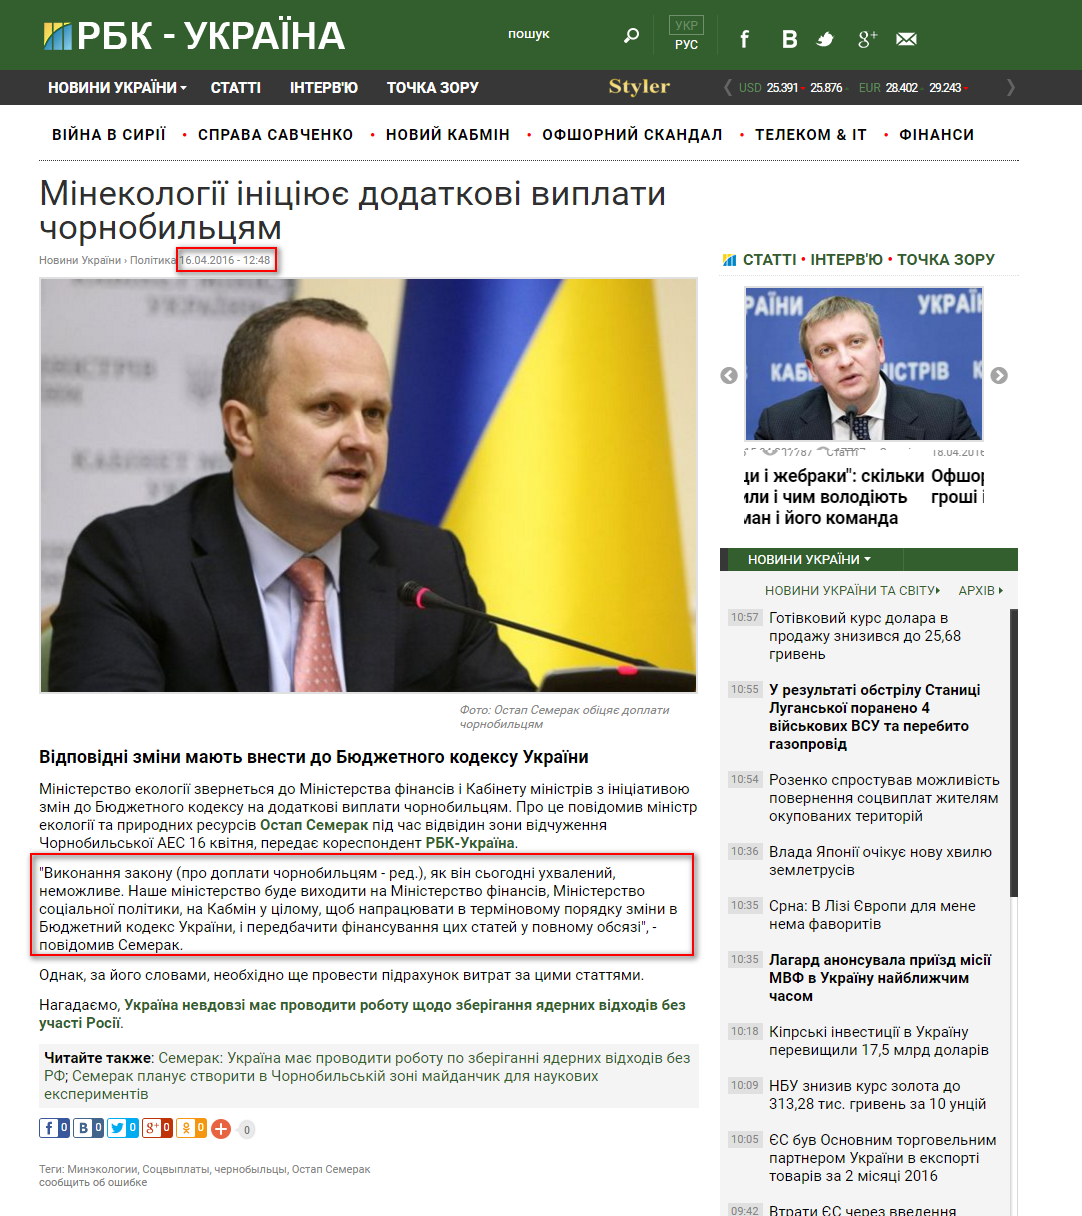 https://www.rbc.ua/ukr/news/minekologii-initsiiruet-dopolnitelnye-vyplaty-1460800089.html